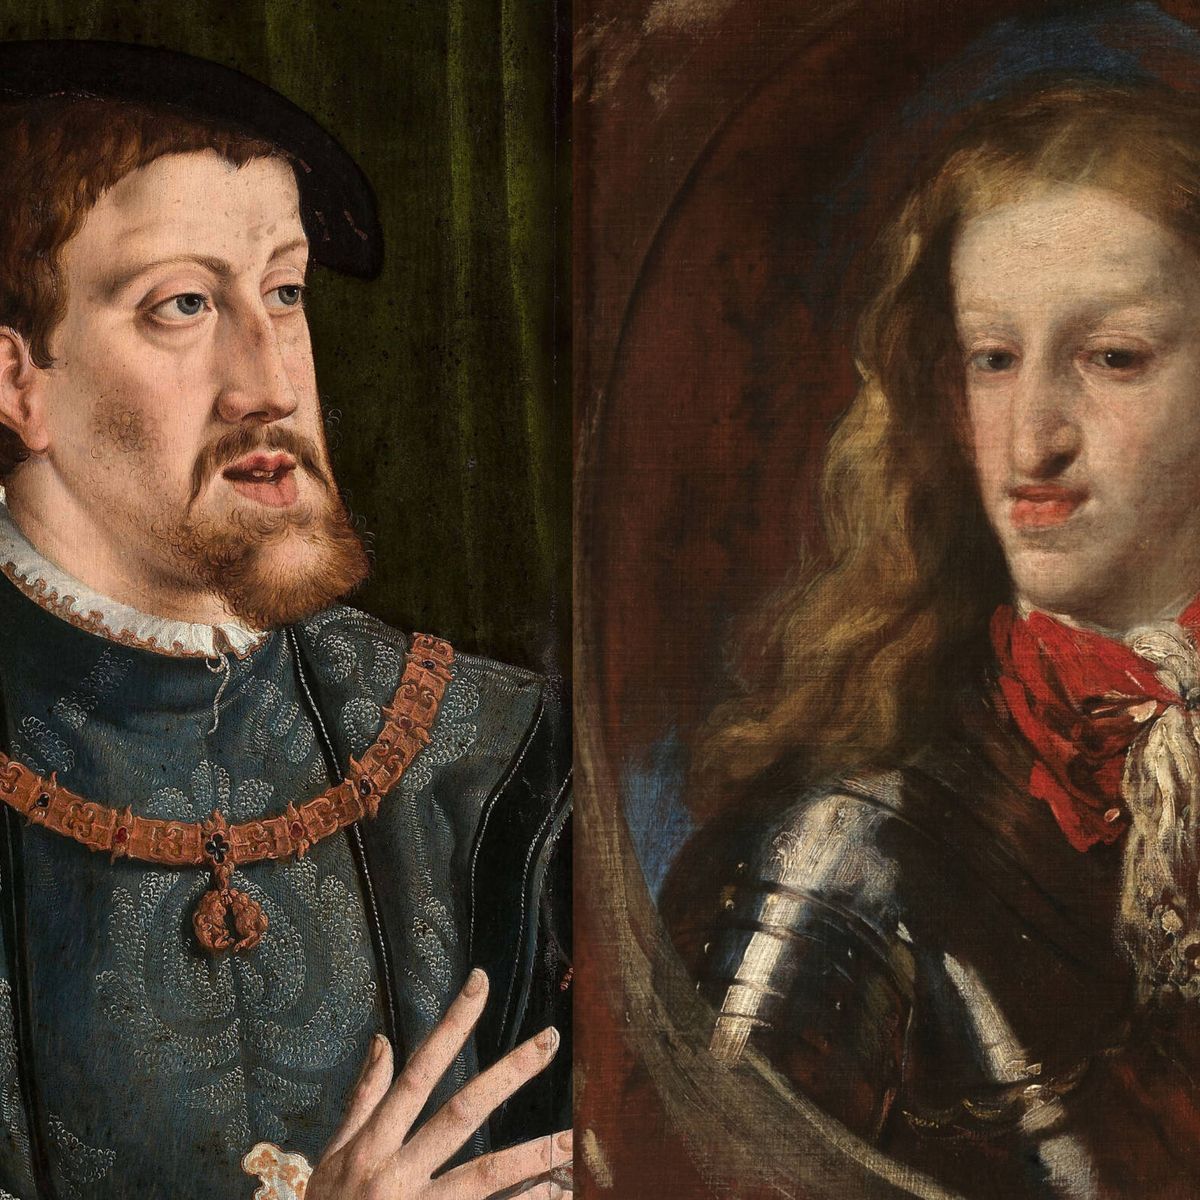 El prognatismo Habsburgo, la deformación que acomplejó a Carlos V